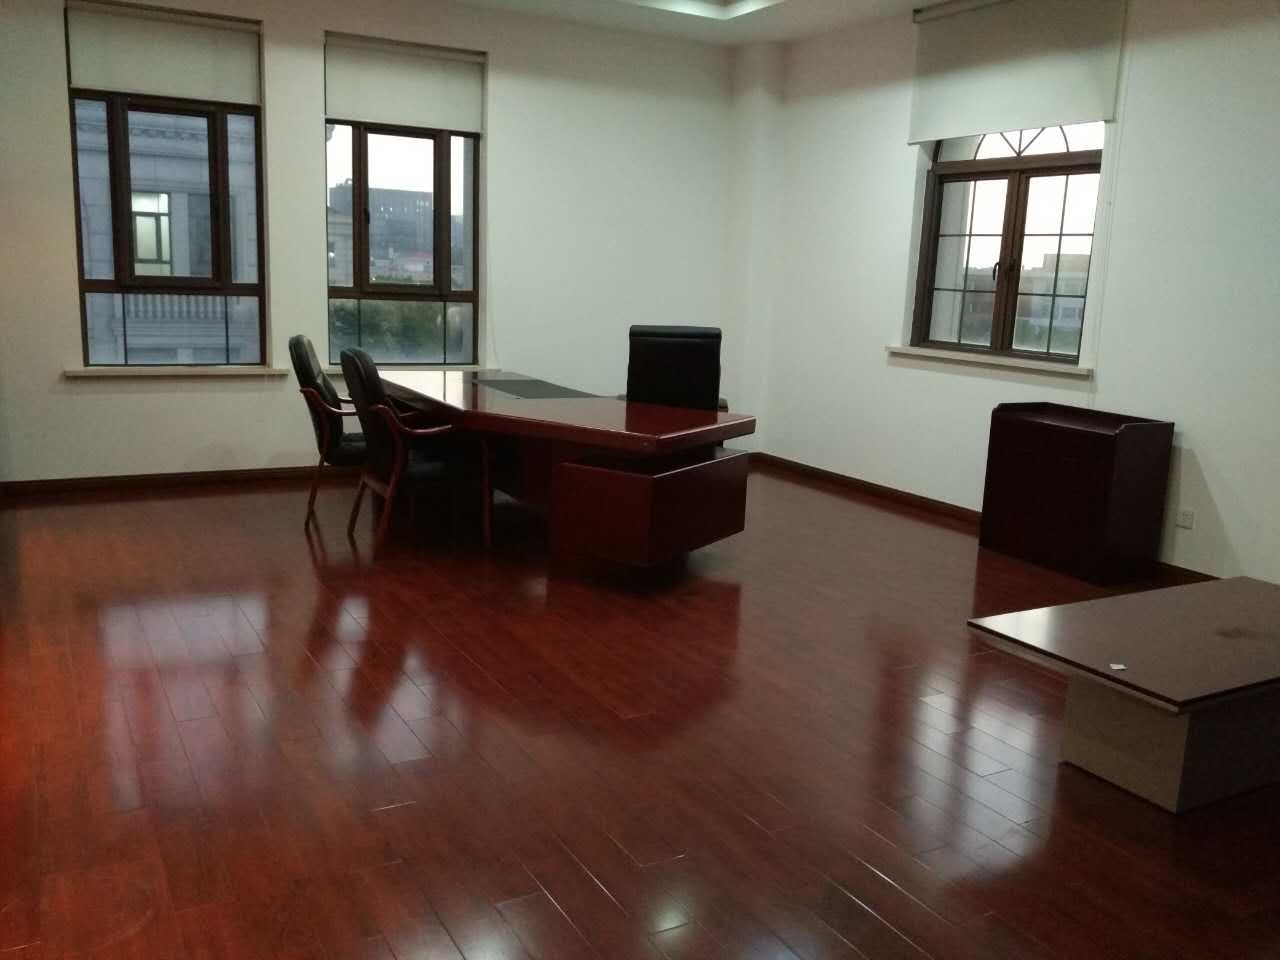 中鑫企业广场457平米办公室出租-租金价格3.55元/m²/天